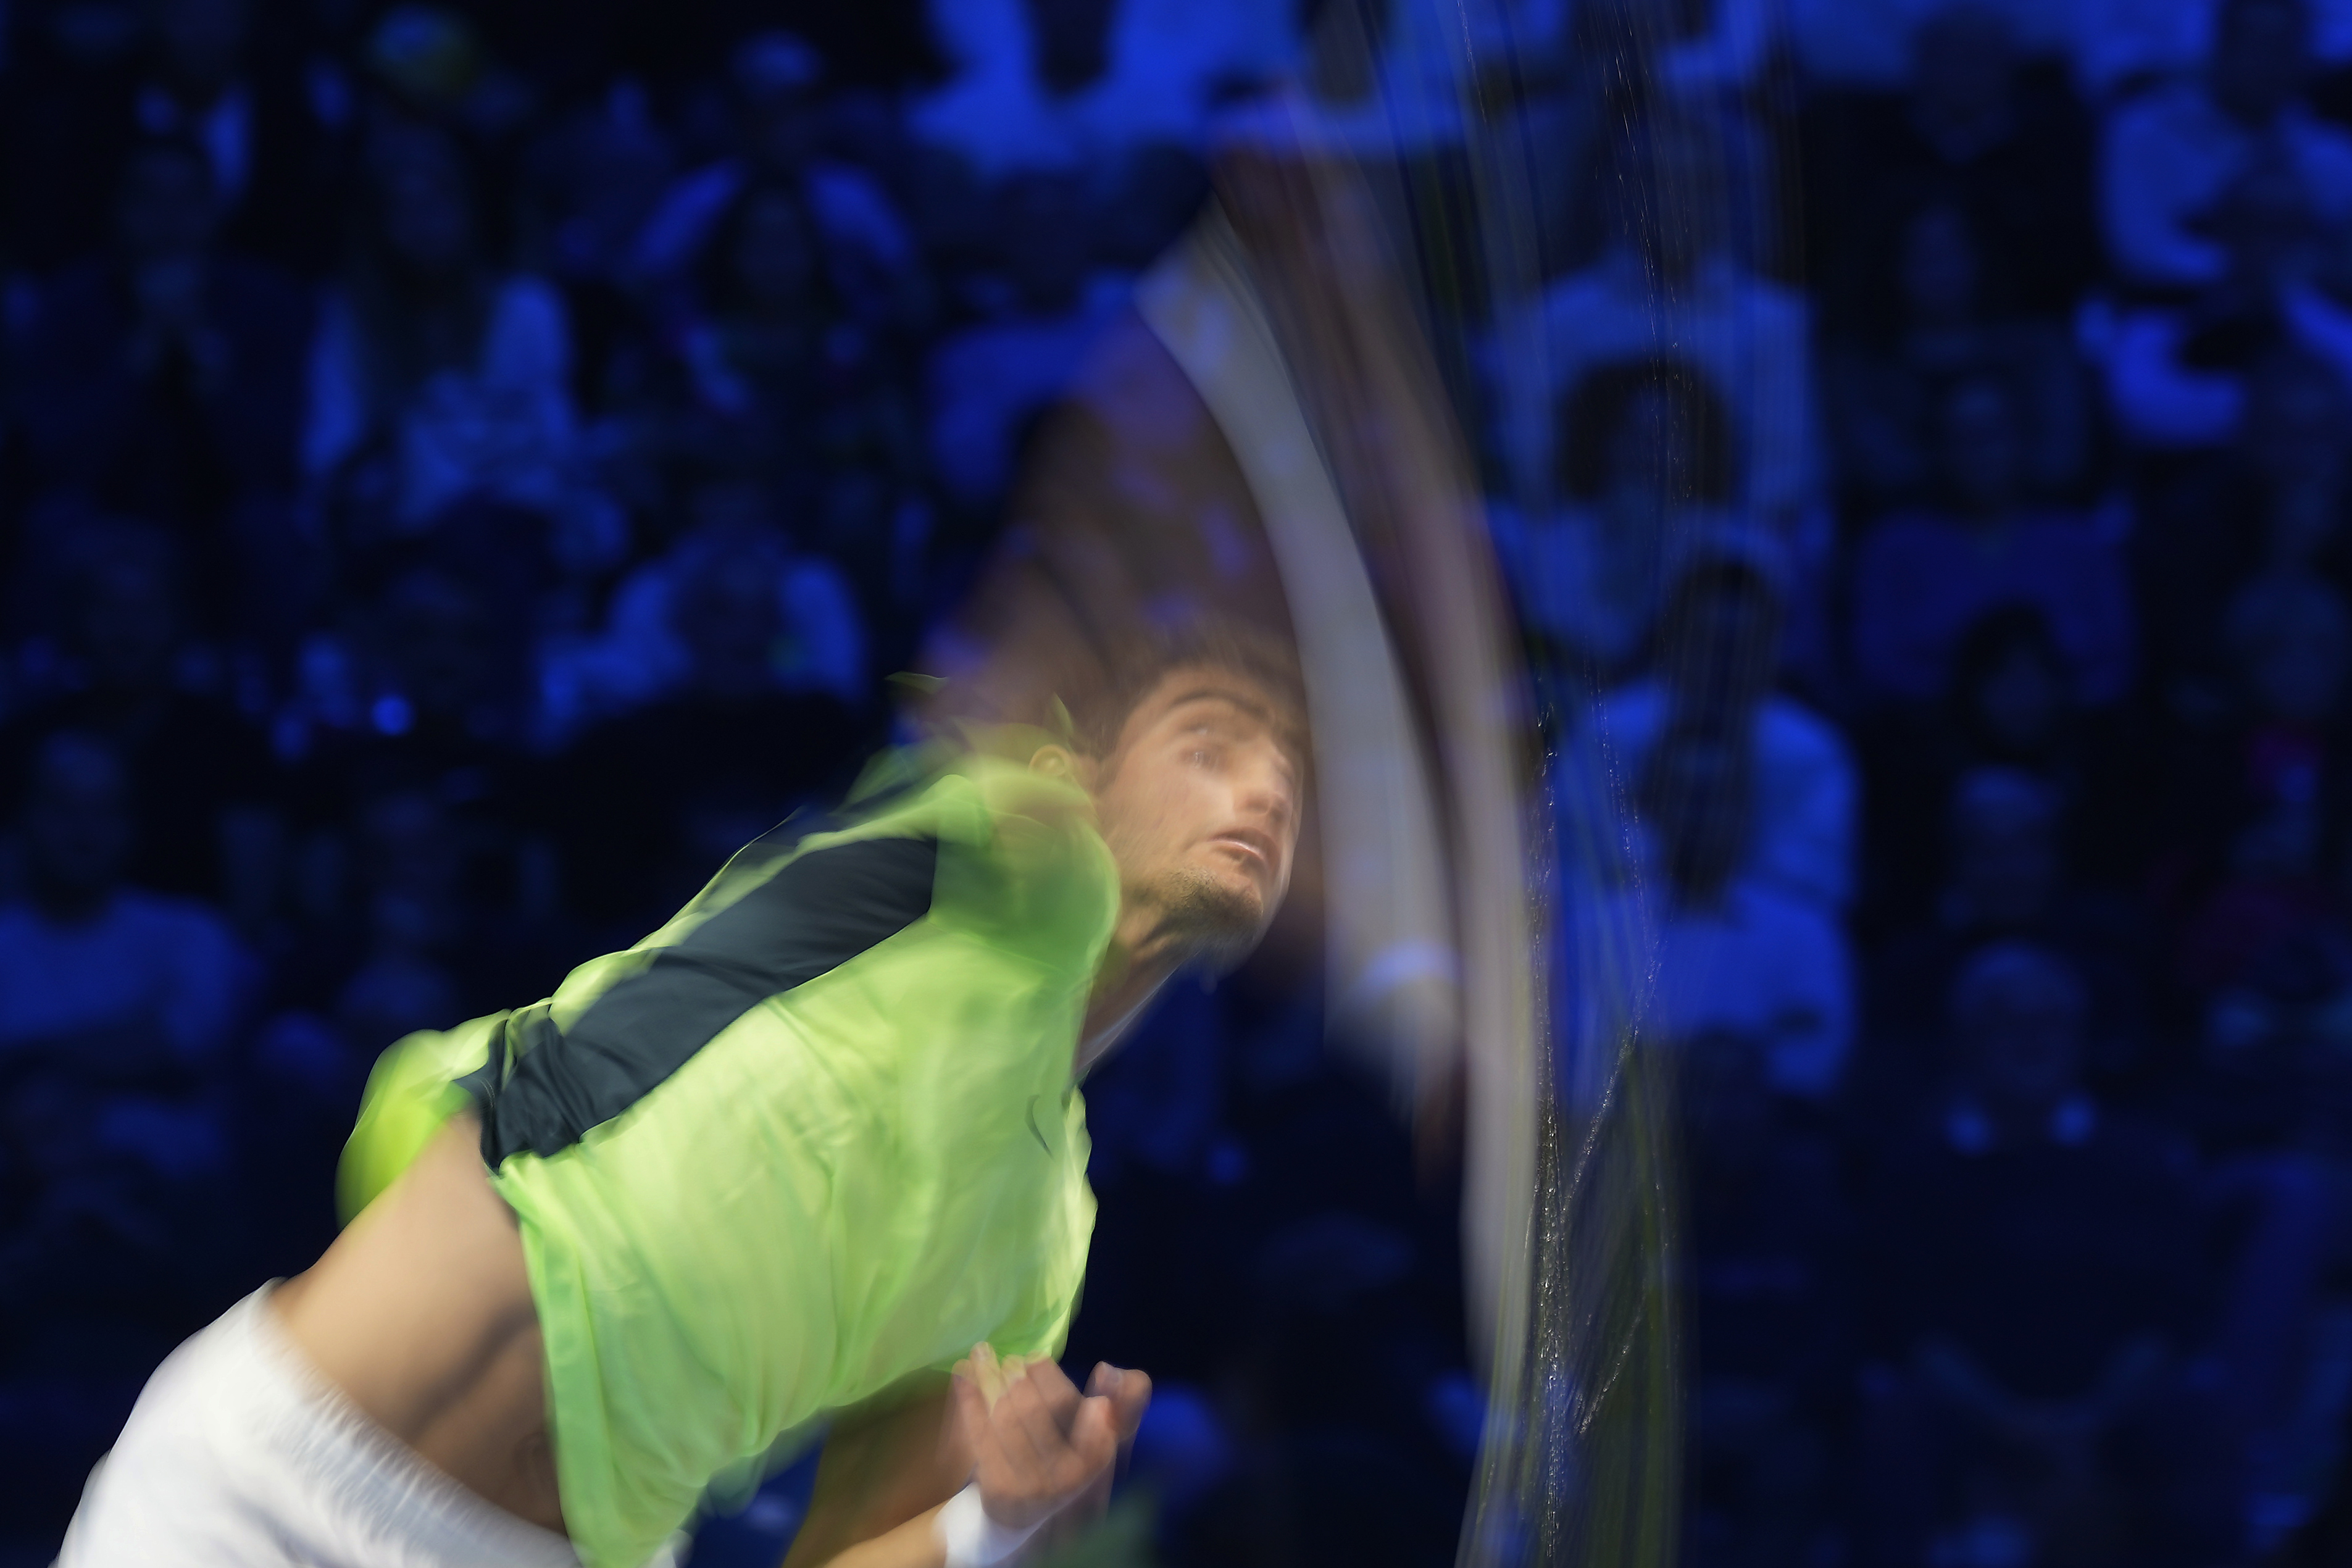 Zverev overpowers Alcaraz in ATP Finals opener